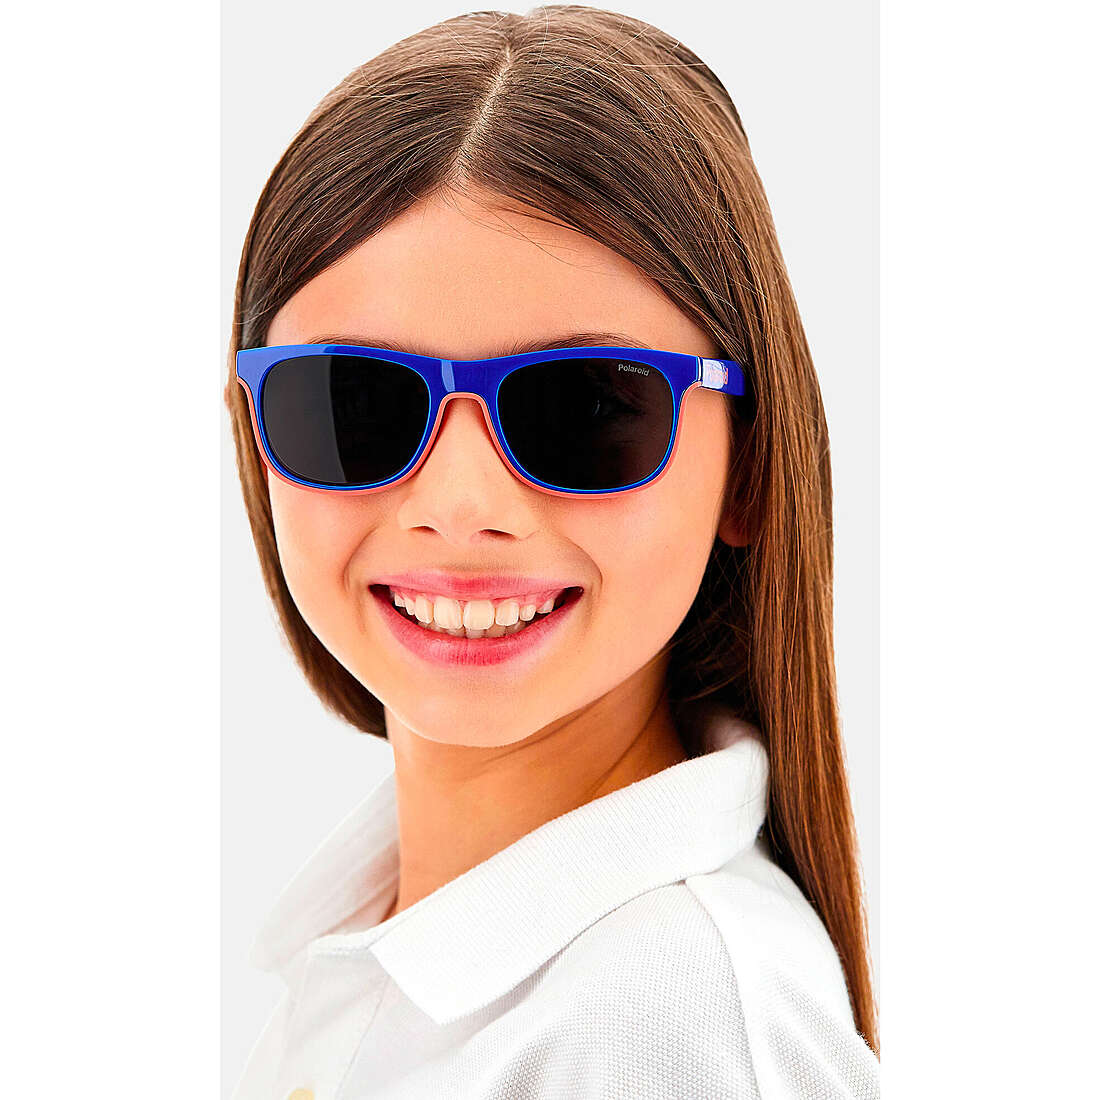 Polaroid lunettes de soleil Kids enfant 203938RTC47M9 Je porte